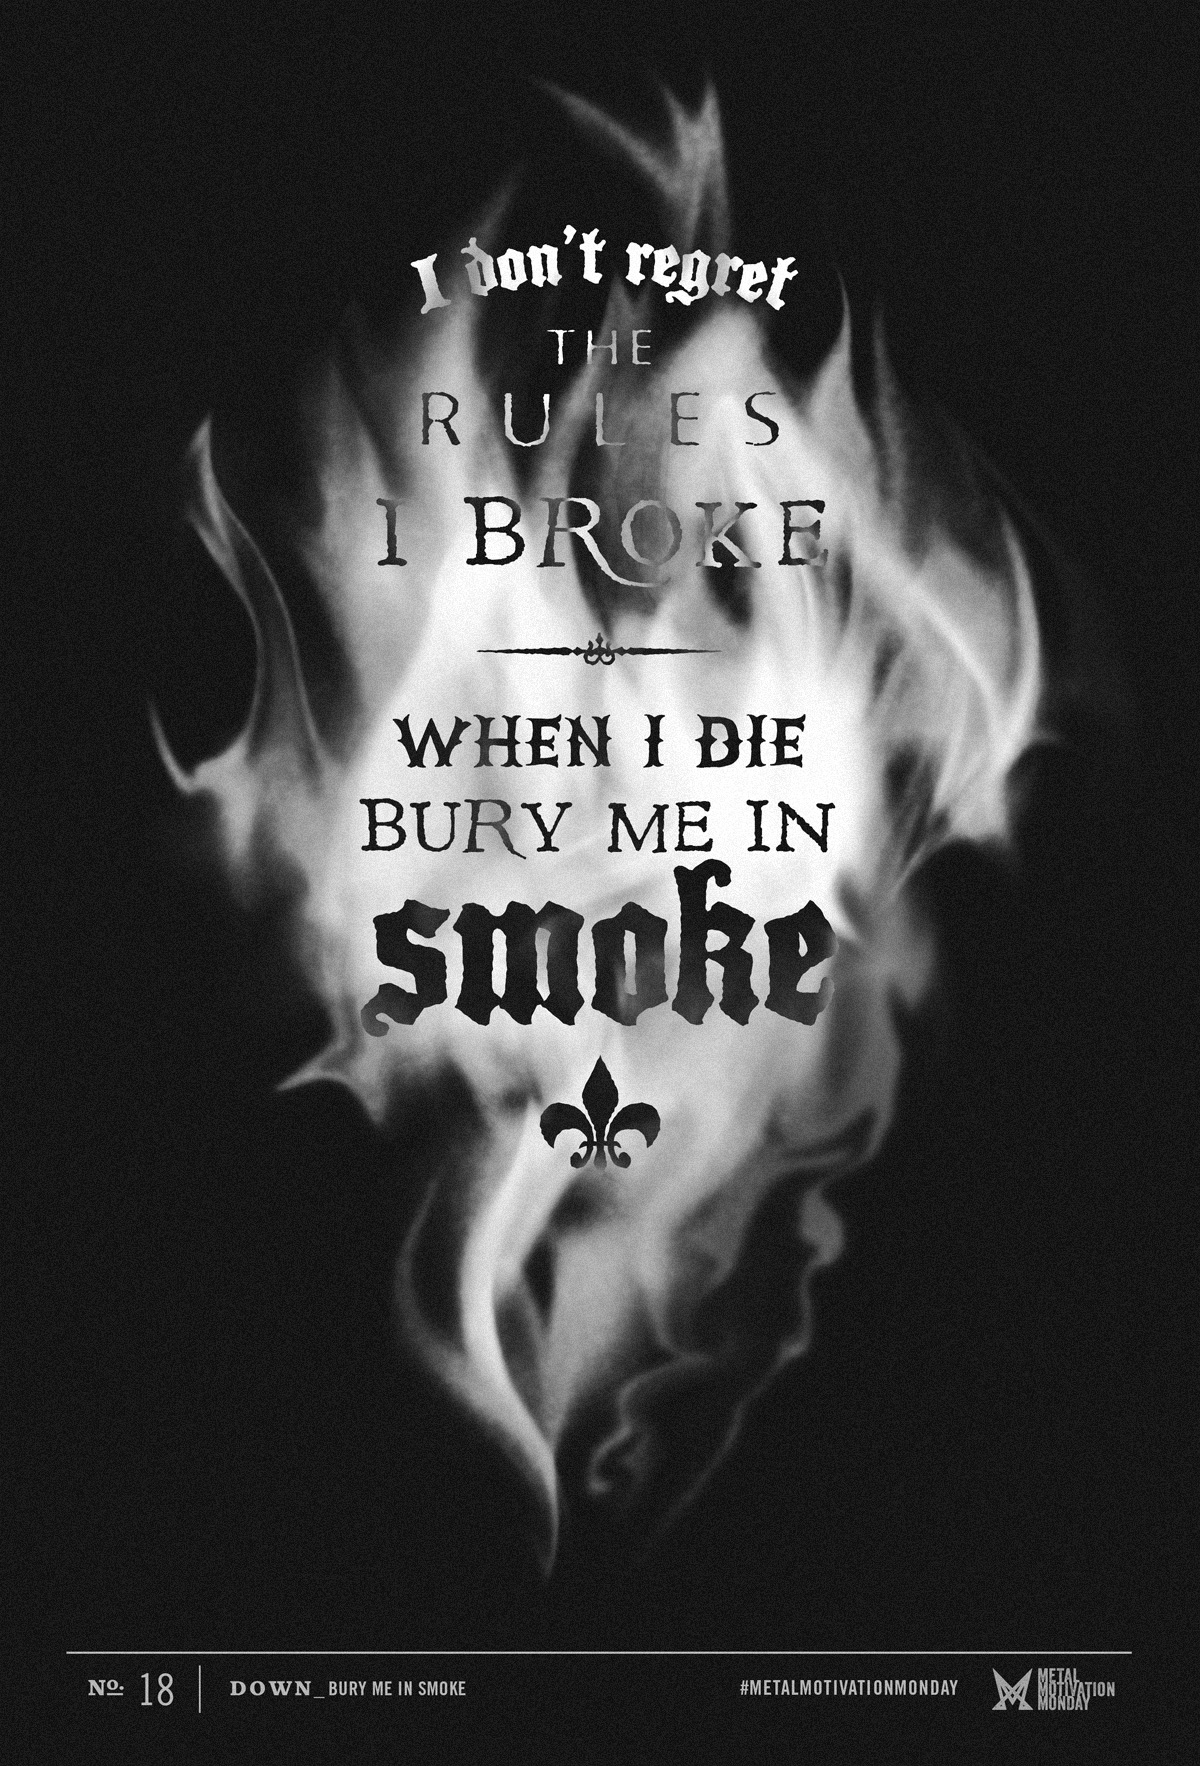 DOWN: Bury Me In Smoke